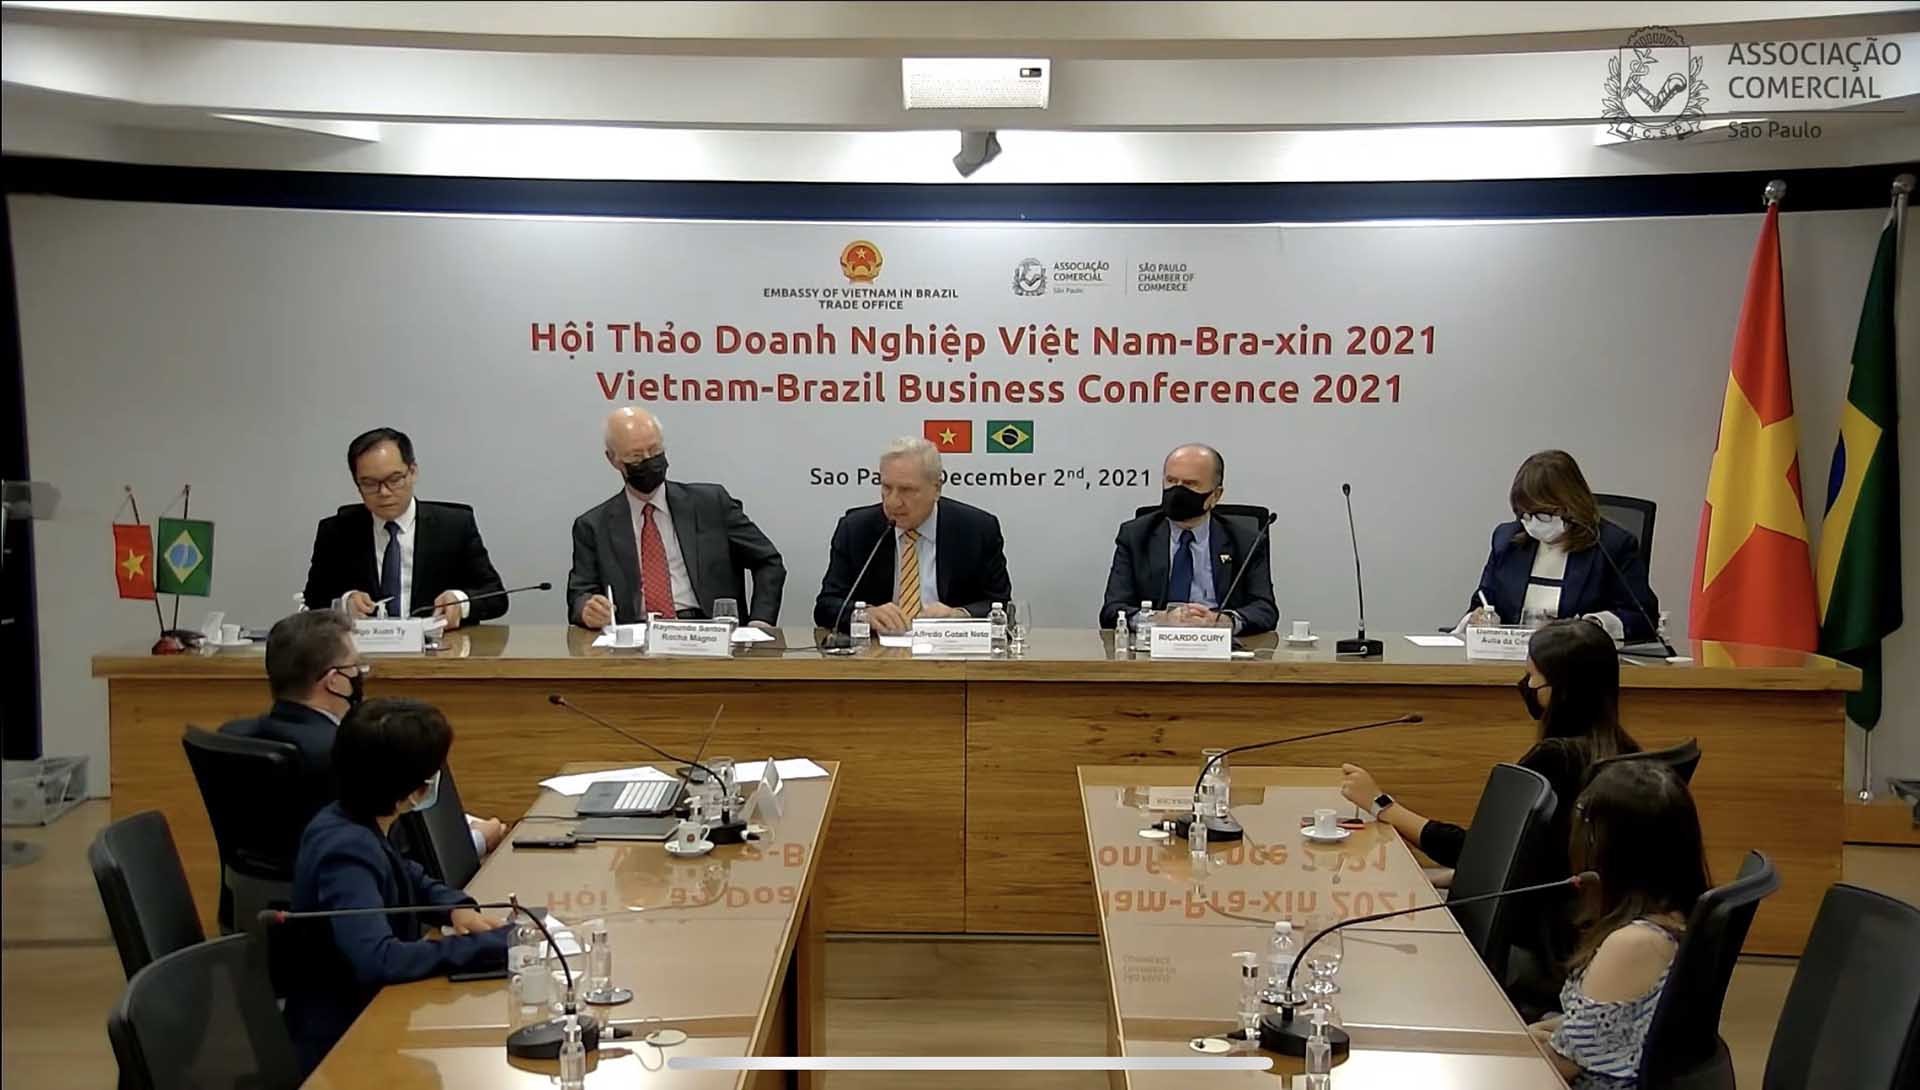 Thương vụ Đại sứ quán Việt Nam tại Brazil đã phối hợp với Hiệp hội Thương mại São Paulo tổ chức Hội thảo Doanh nghiệp Việt Nam-Brazil 2021